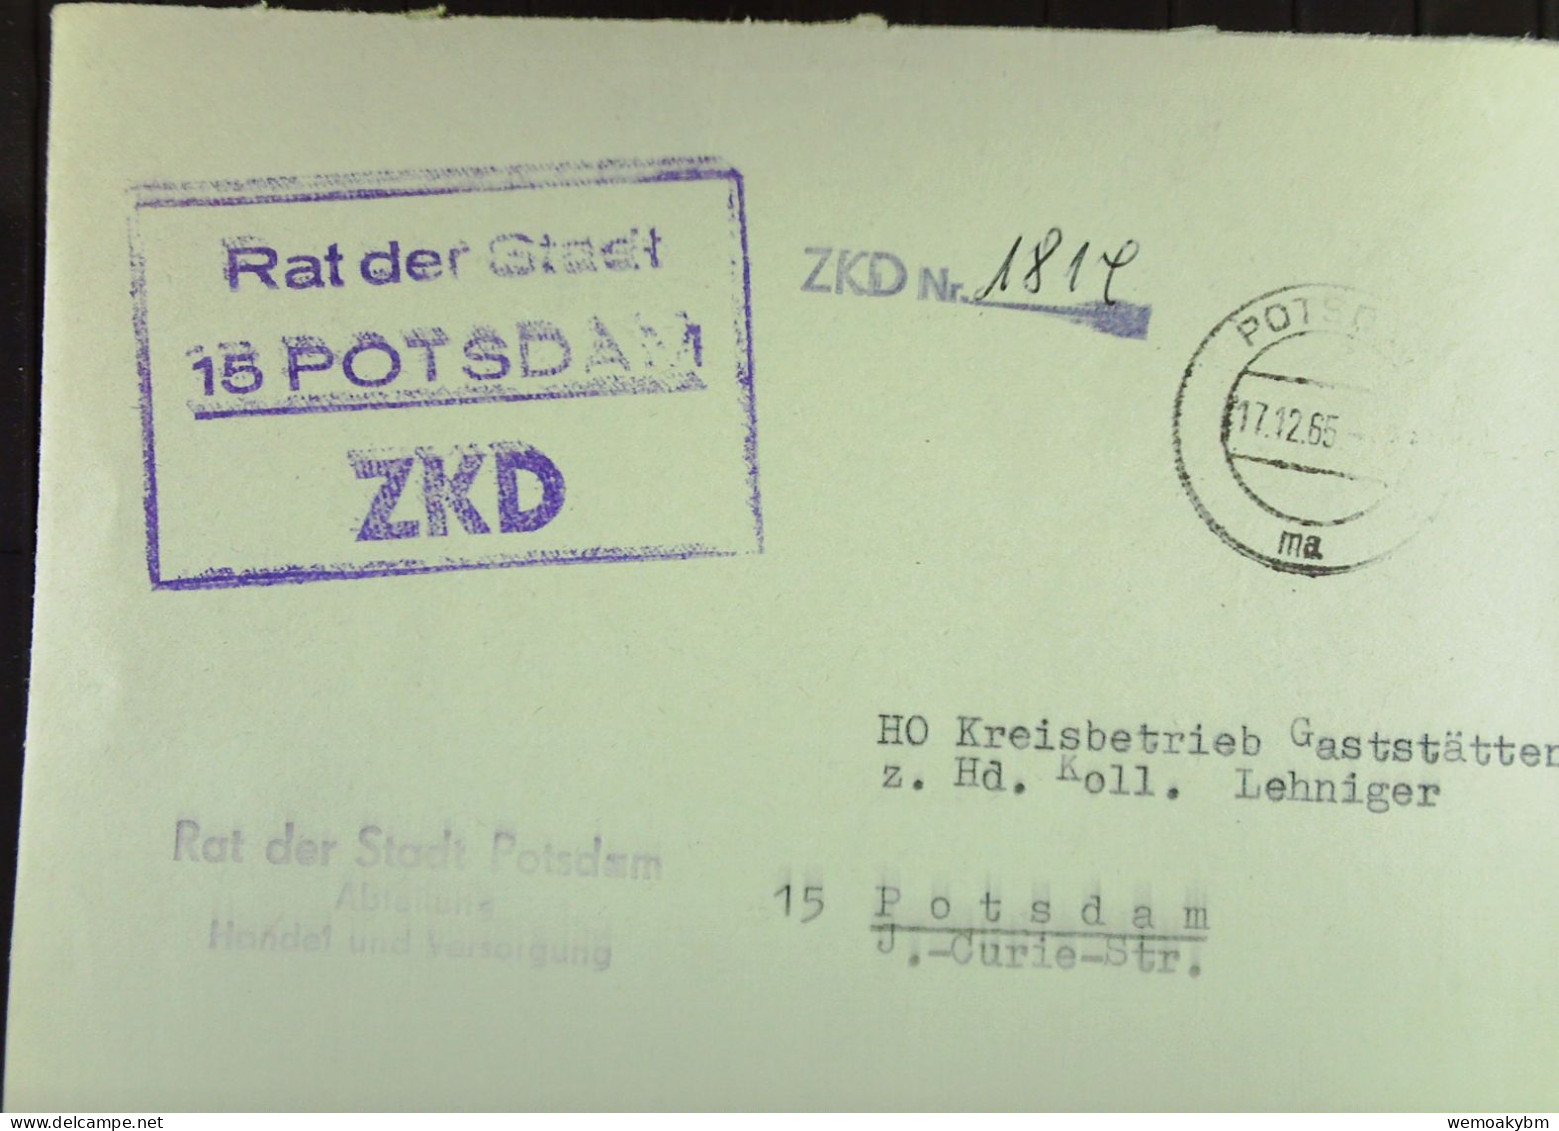 DIENST-Brief Mit ZKD-Kastenst, "Rat Der Stadt 15 POTSDAM" V17.12.65 An HO Kreisbetrieb Gaststäten Potsdam -ZKD-Nr. 1814 - Covers & Documents